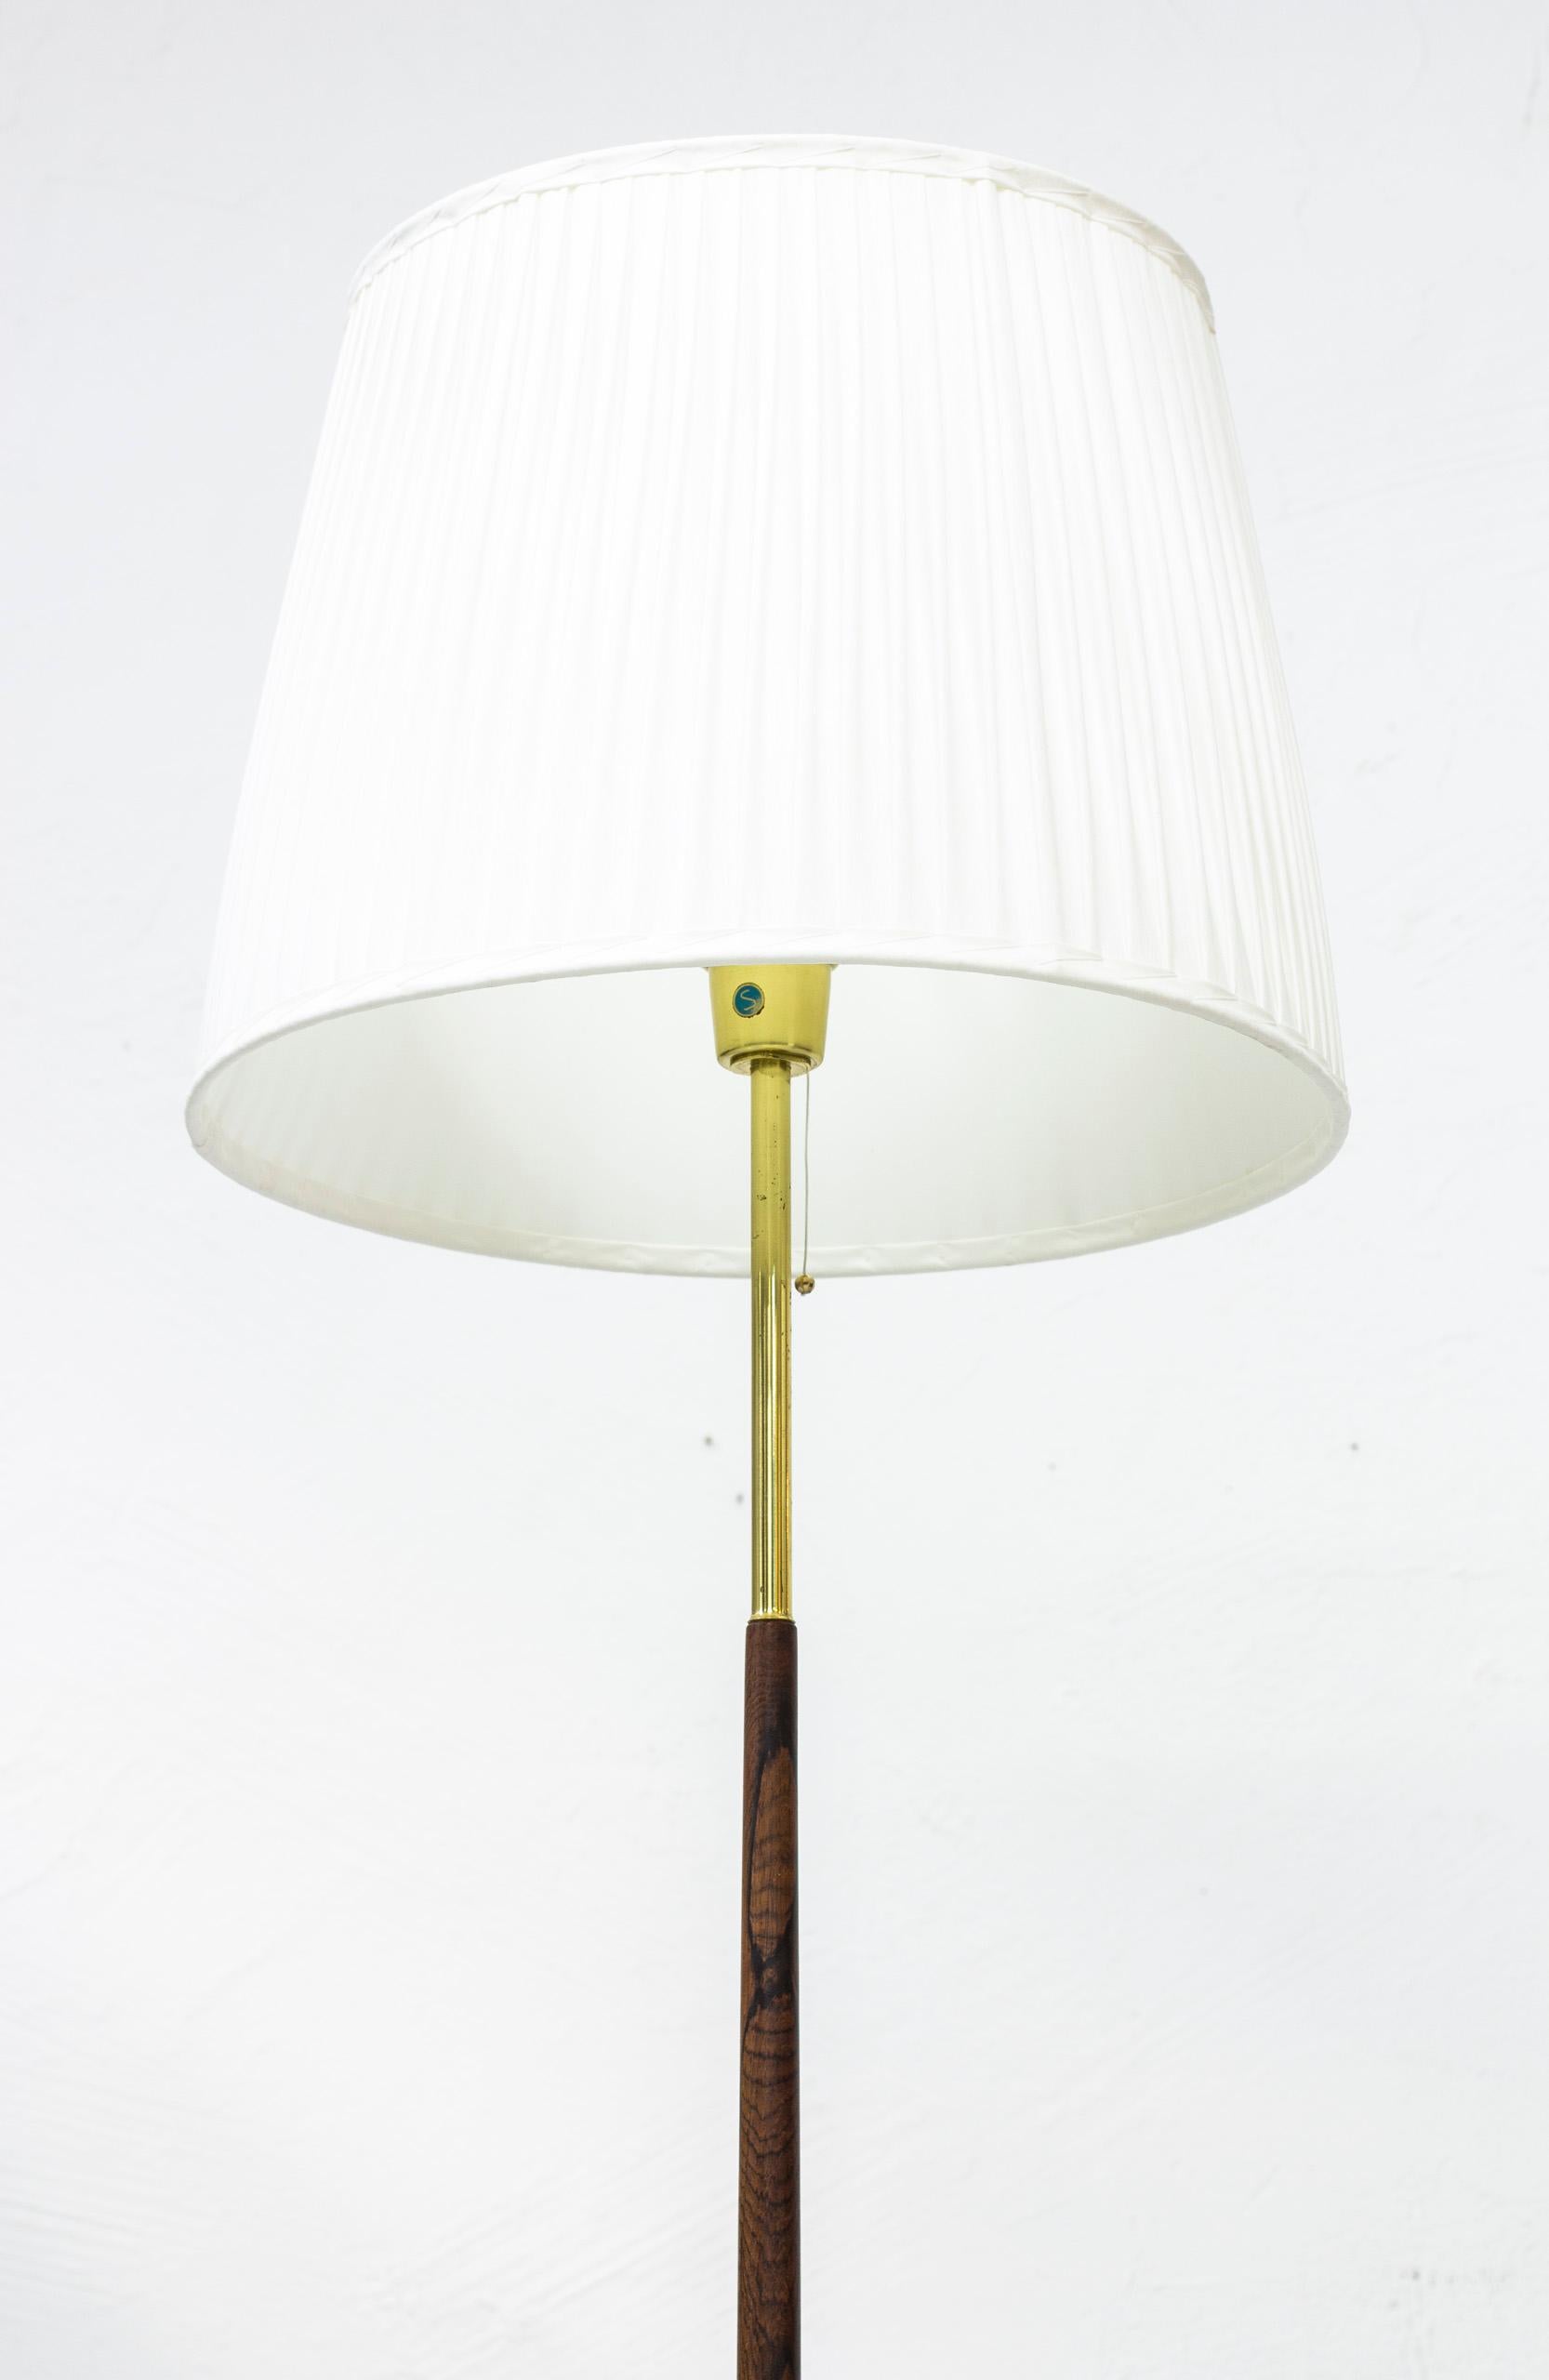 Scandinavian Modern Walnut and Brass Floor Lamps by Möller Armaturer, Sweden, 1960s